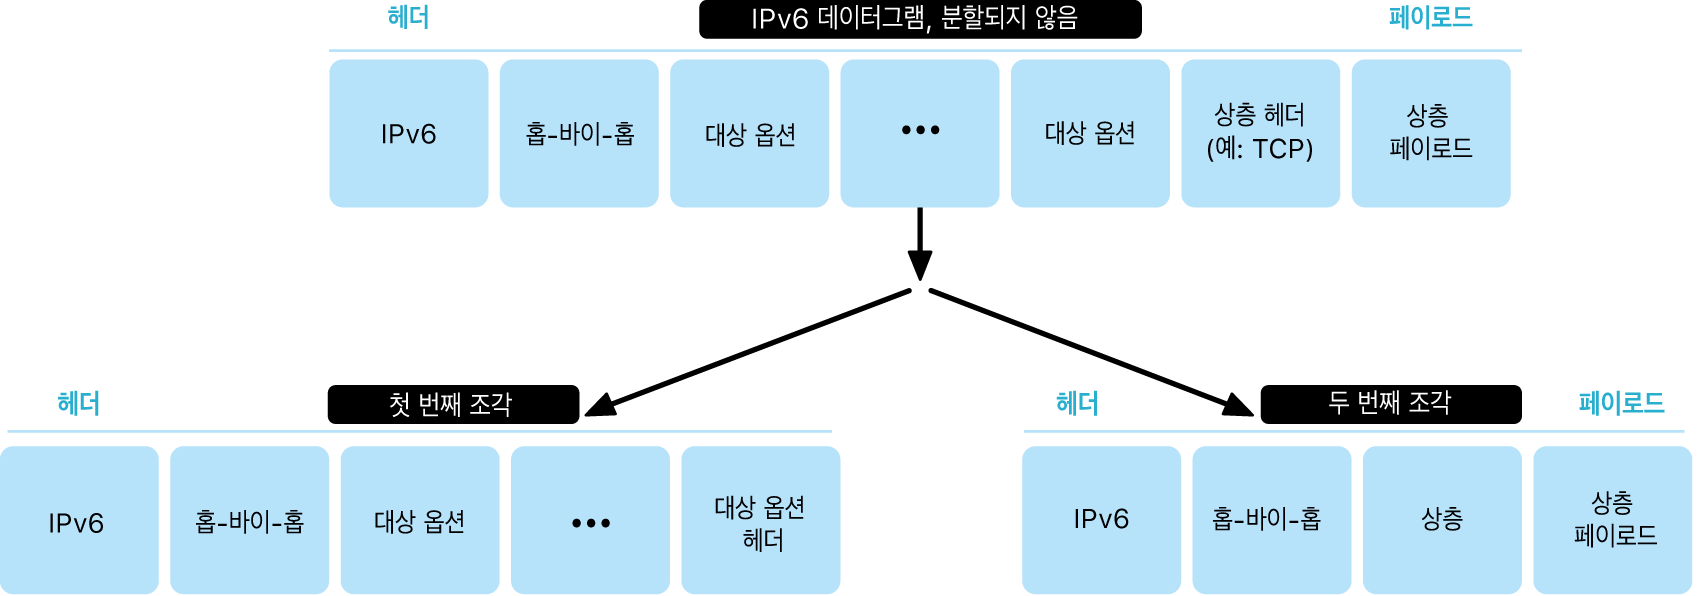 IPv6 데이터그램이 분할되지 않은 다이어그램 및 그 아래의 분할된 다이어그램으로 이중 표시됨.